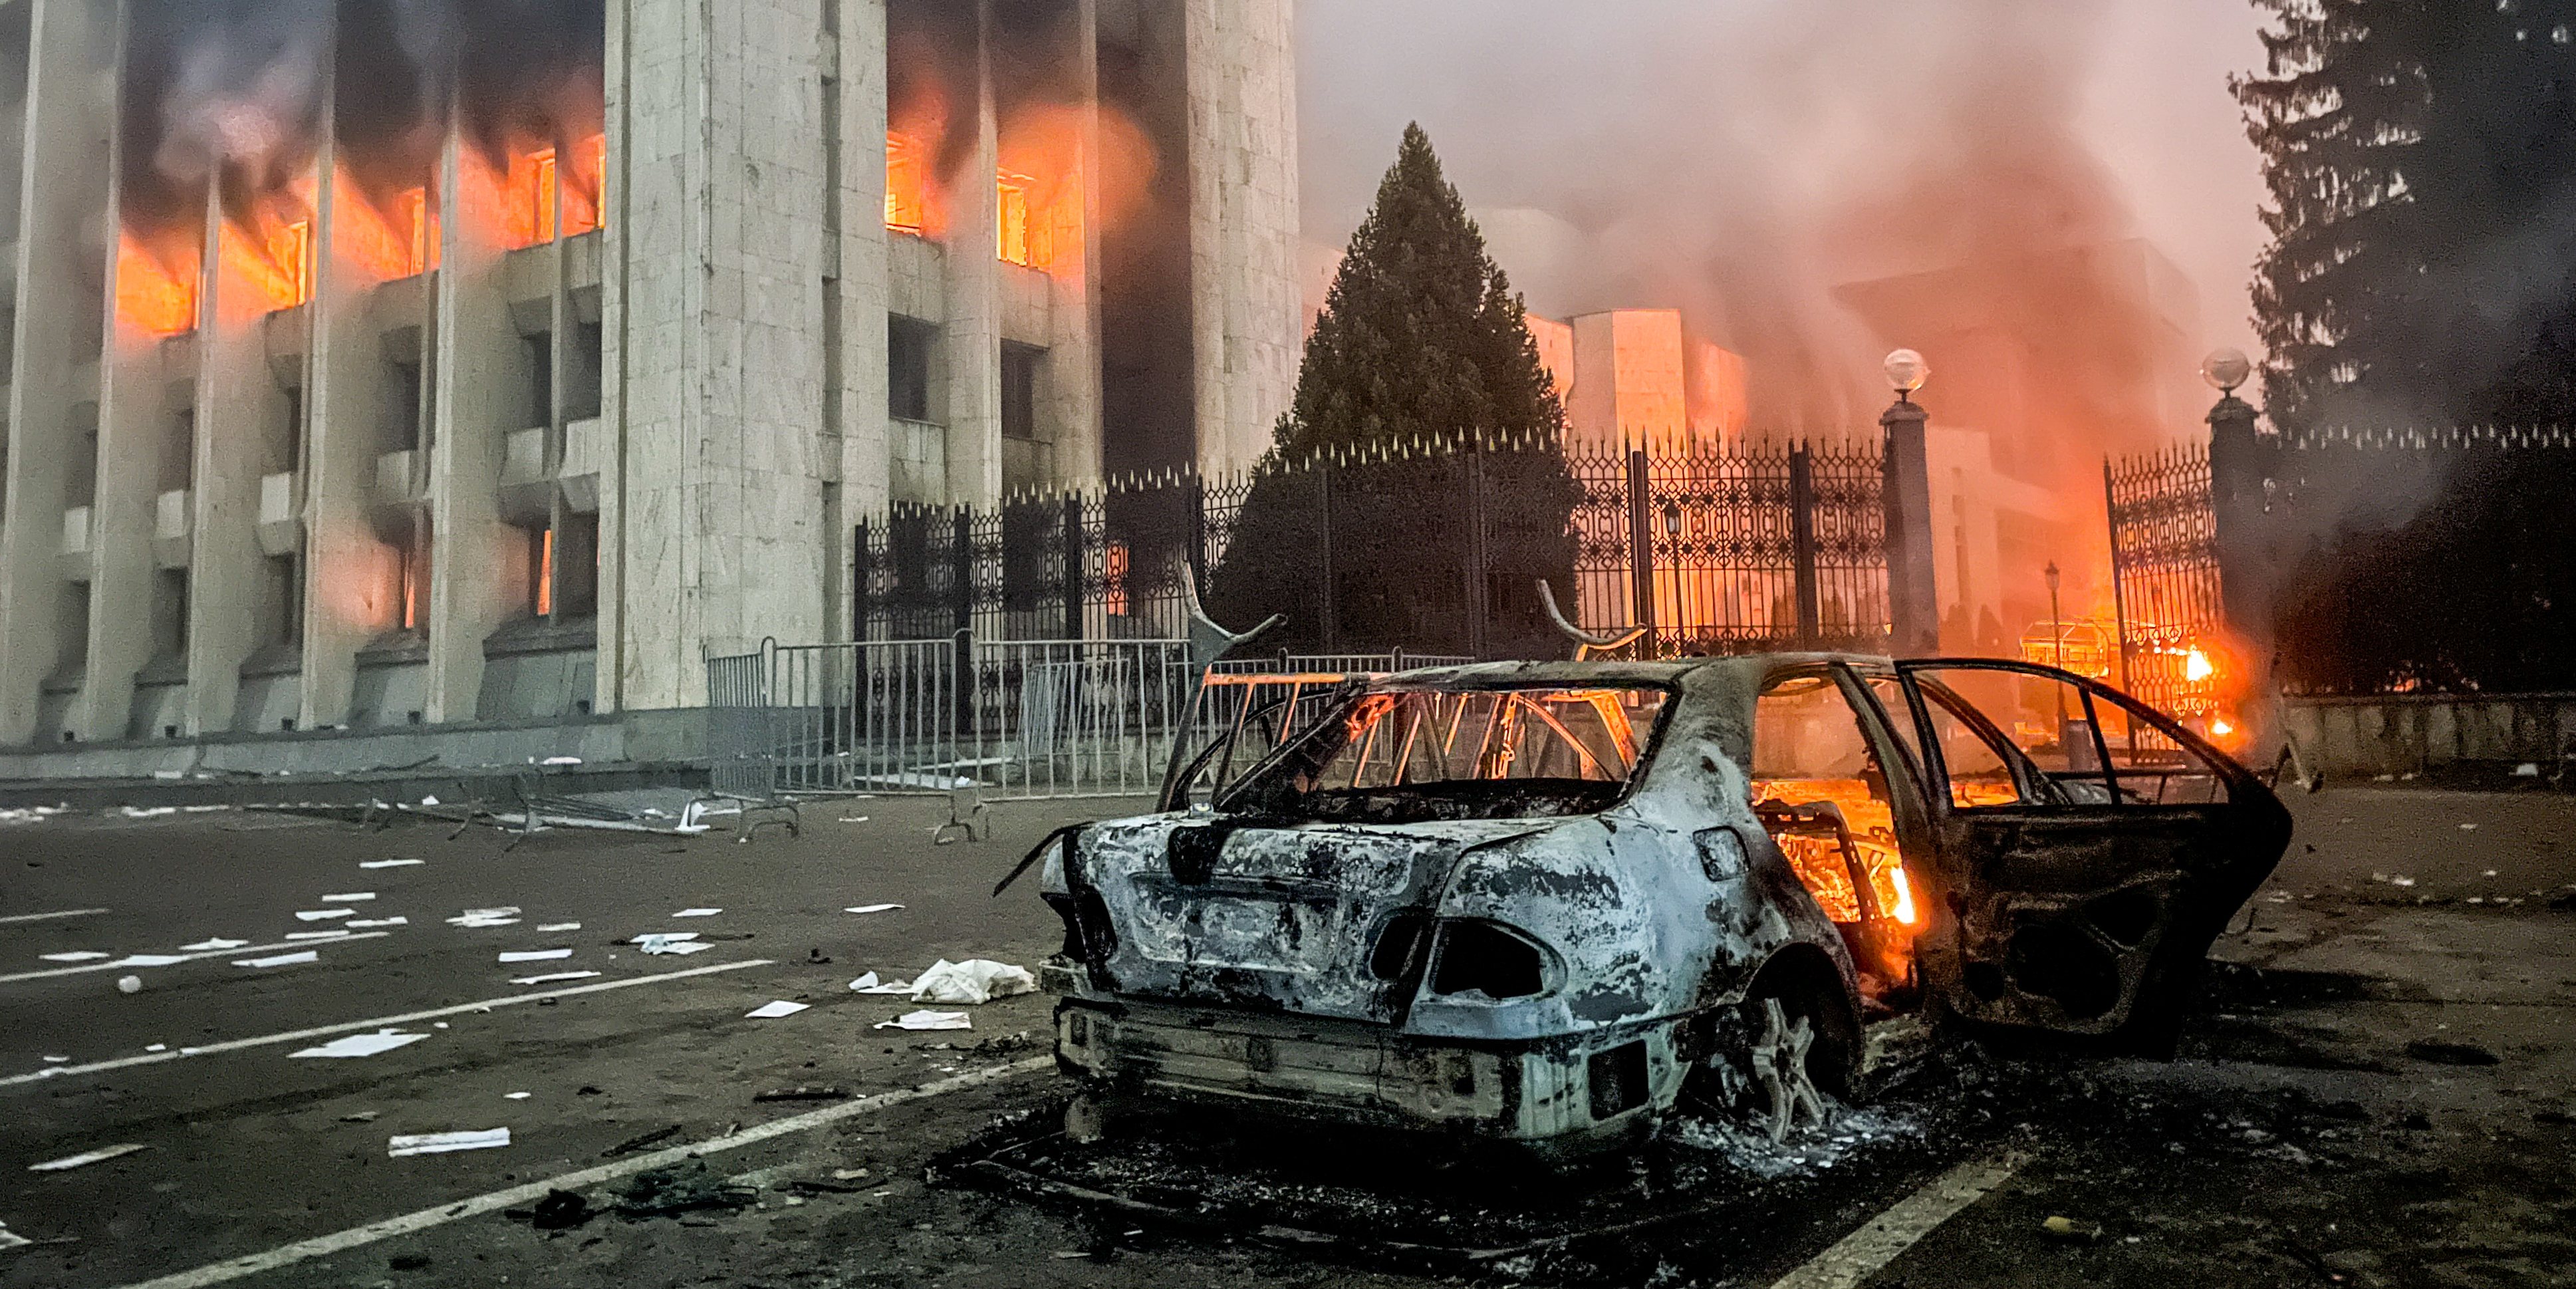 Mayors office on fire in Almaty, Kazakhstan